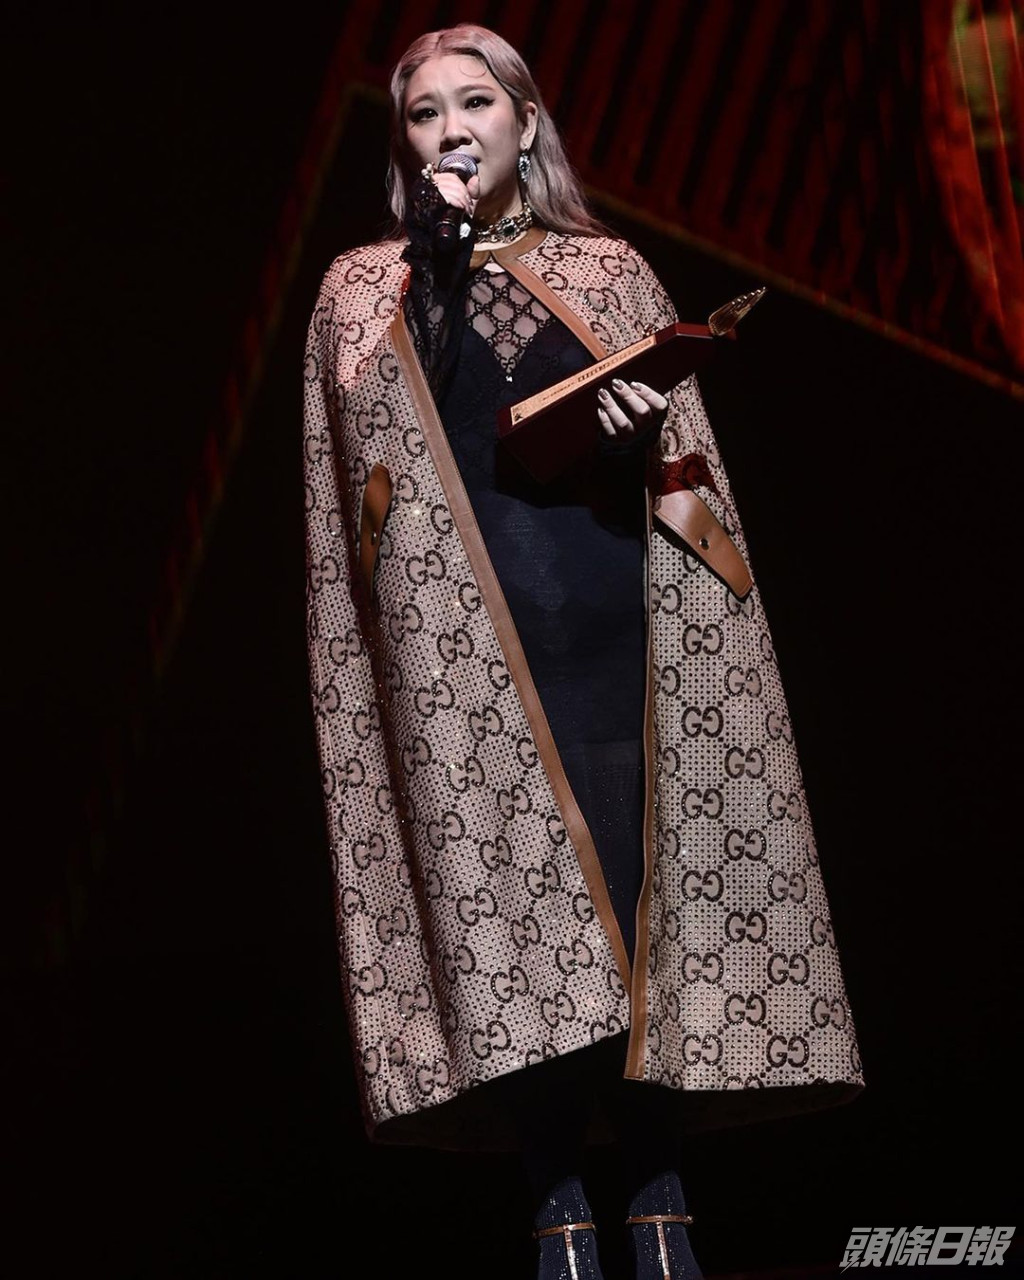 欣宜在《叱咤》首度贏得「叱咤樂壇女歌手」金獎及「我最喜愛的女歌手」。